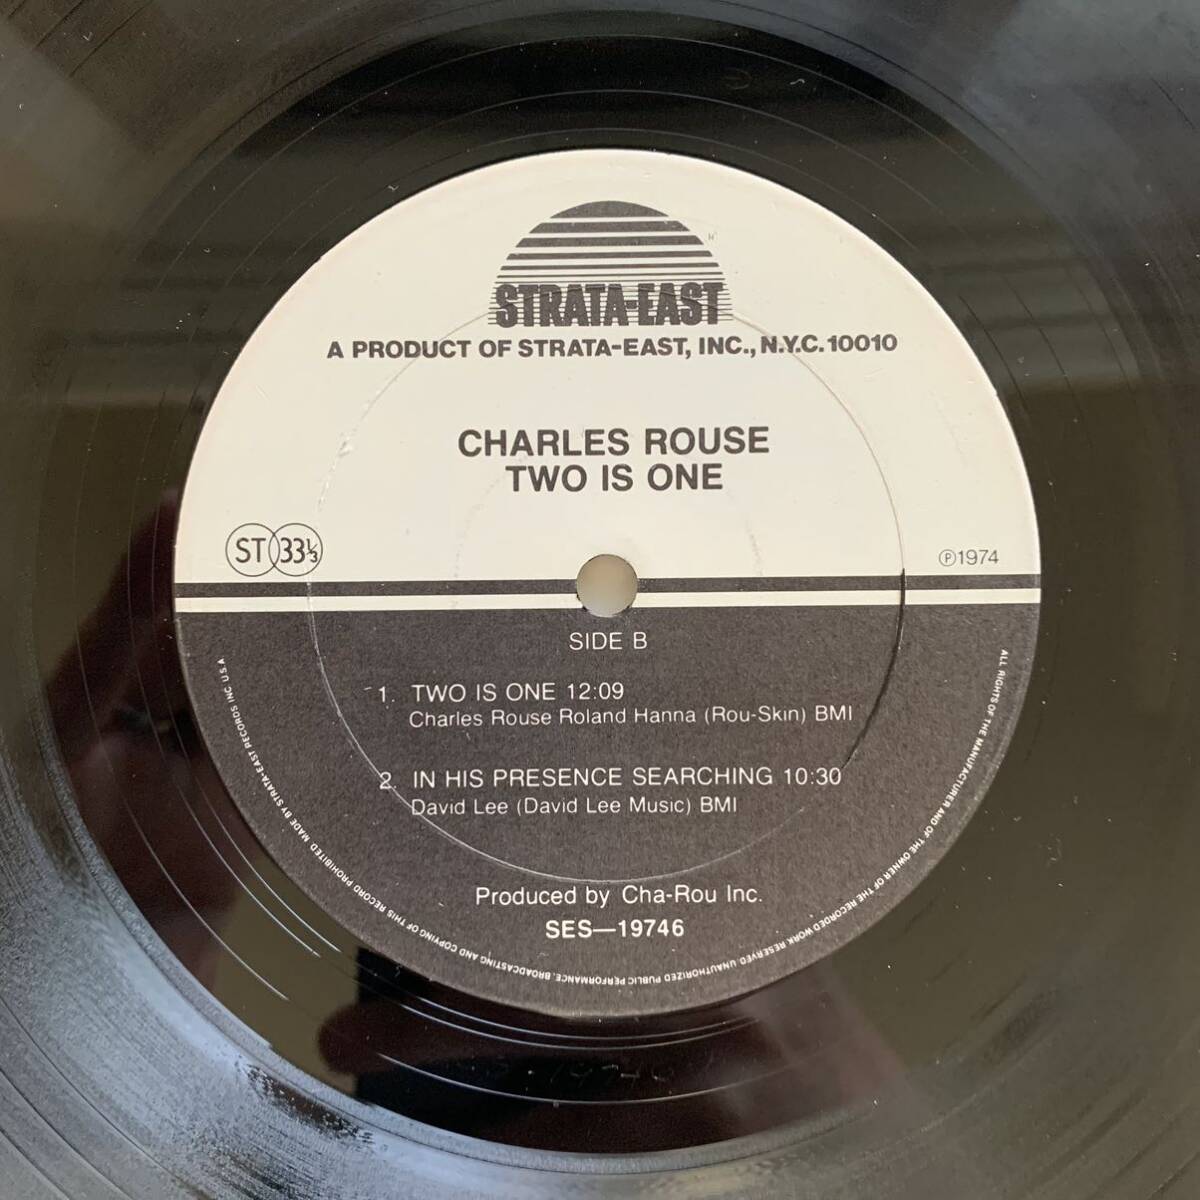 【オリジナル】 Charles Rouse “Two is One” David Lee Stanley Clark Charlie Rouse spiritual jazz funk rare groove Originalの画像6